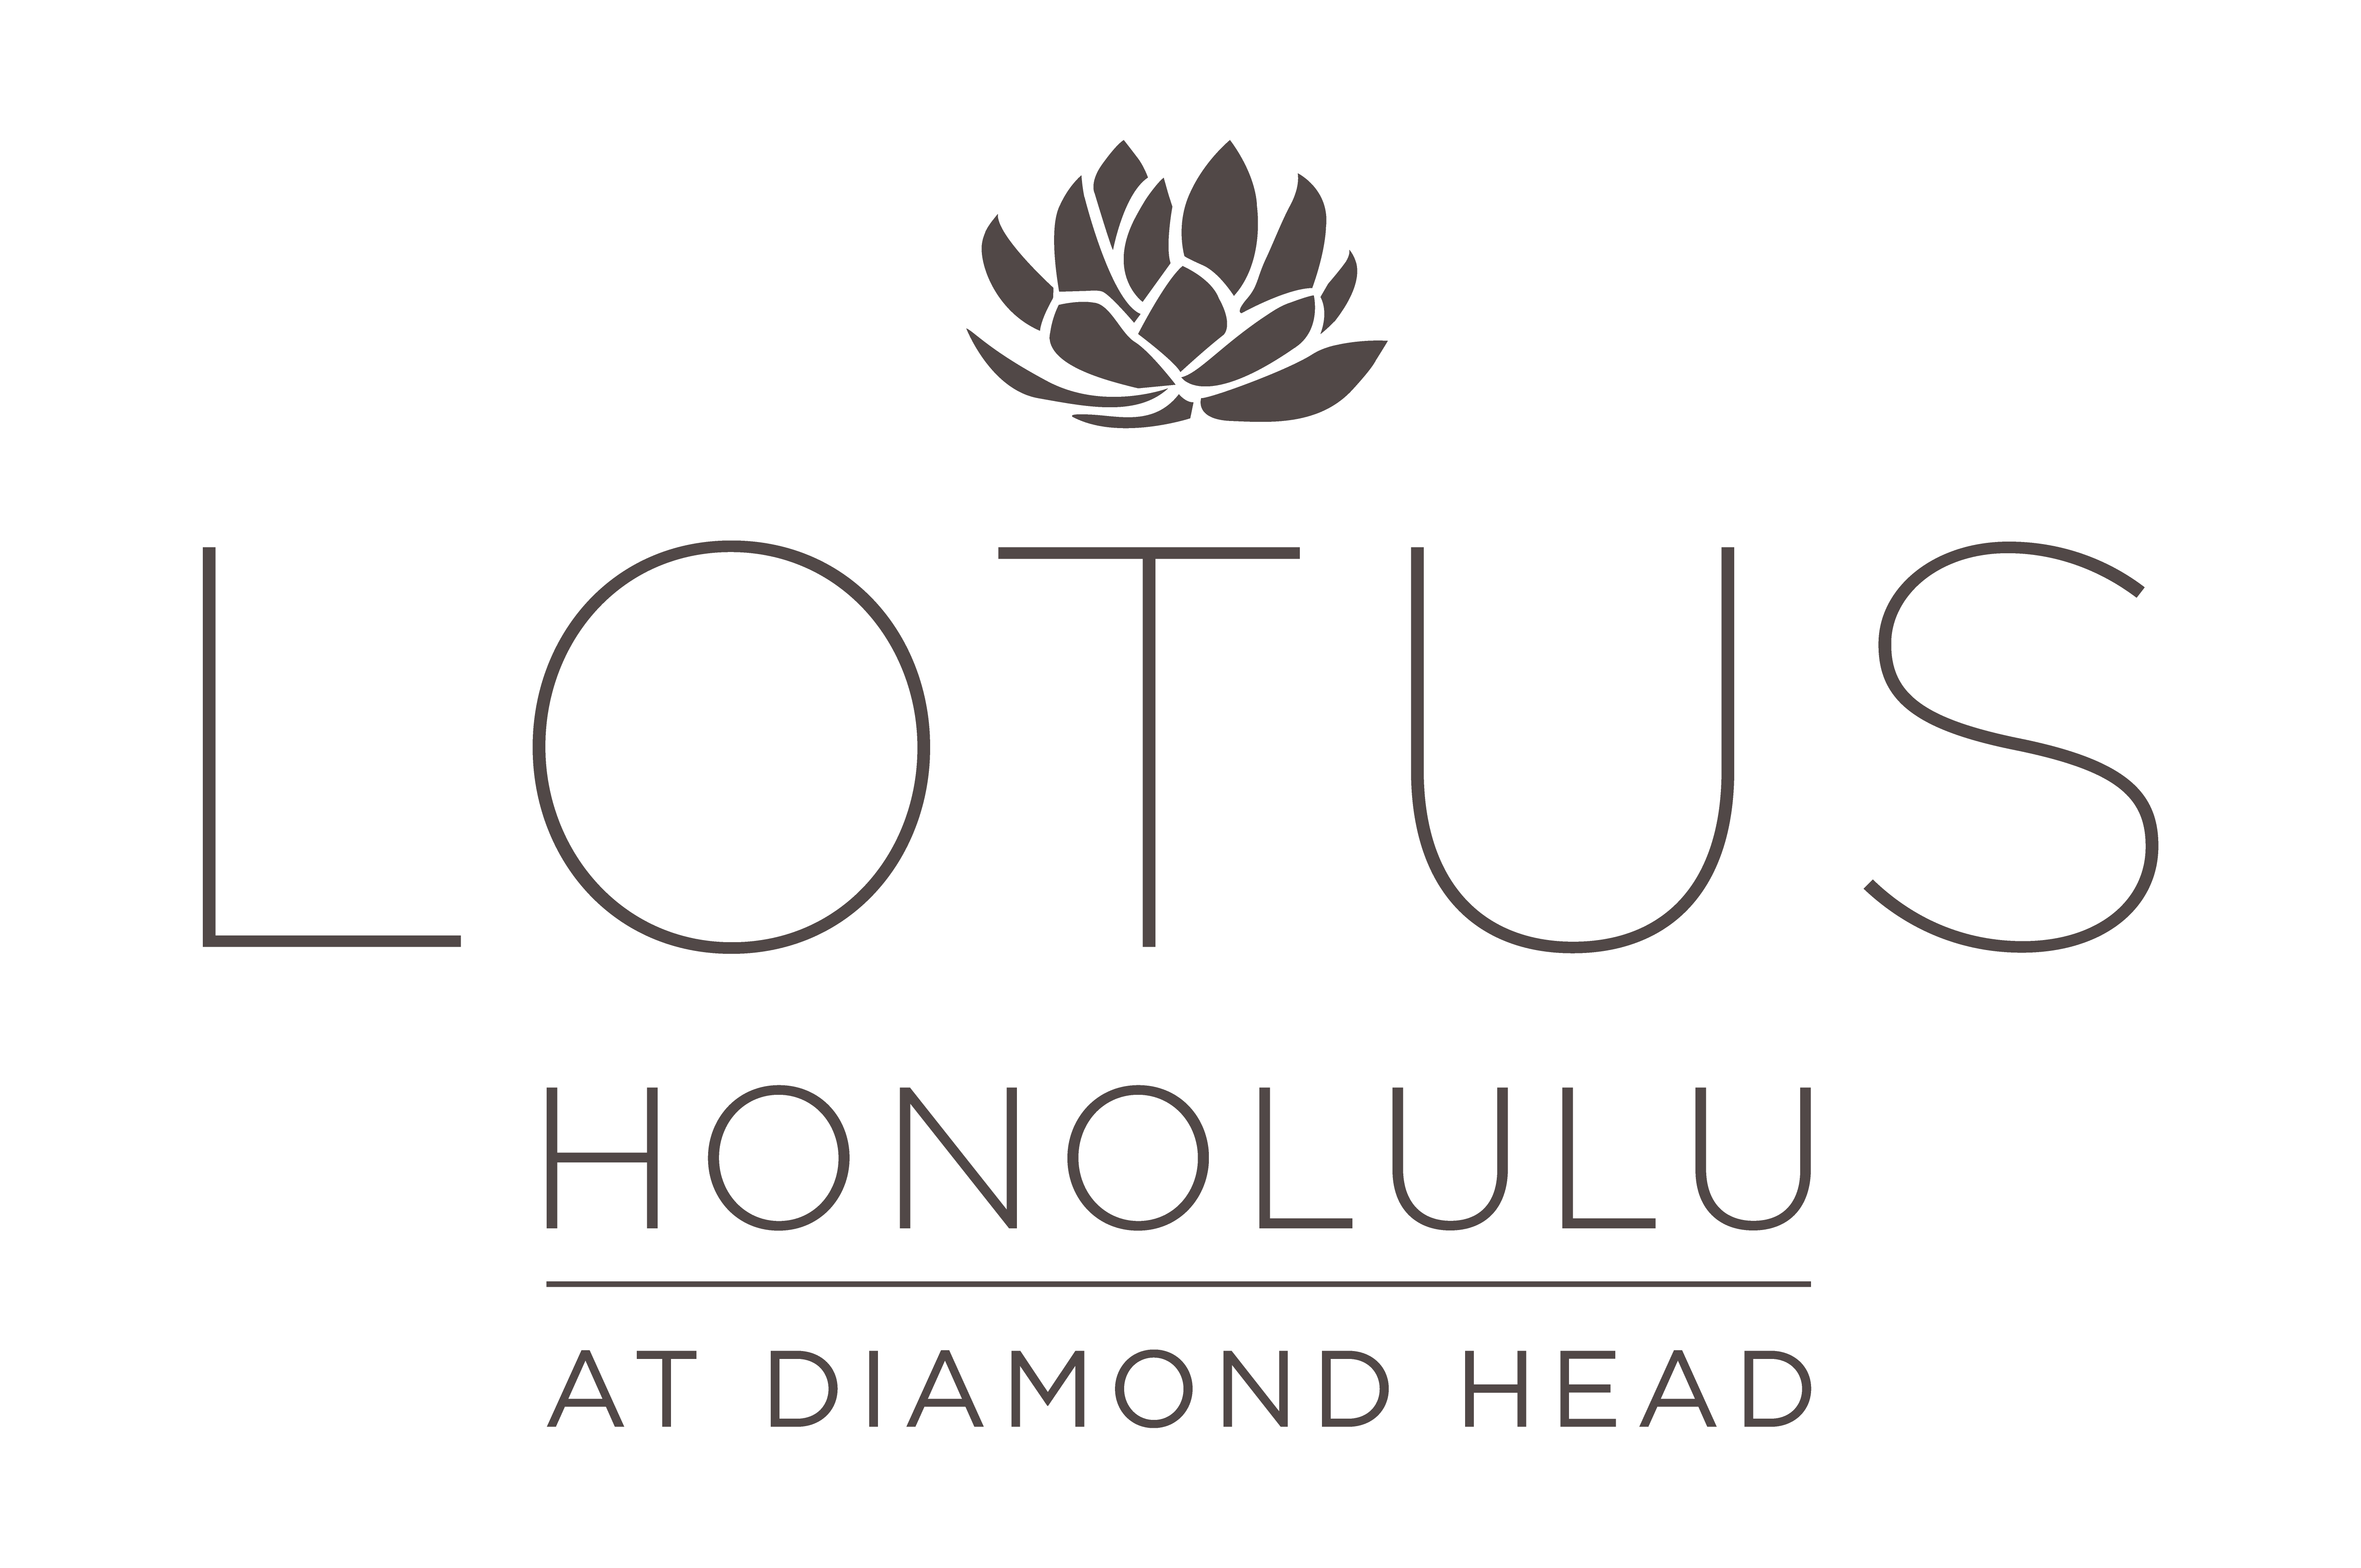 Lotus Honolulu at Diamond Head